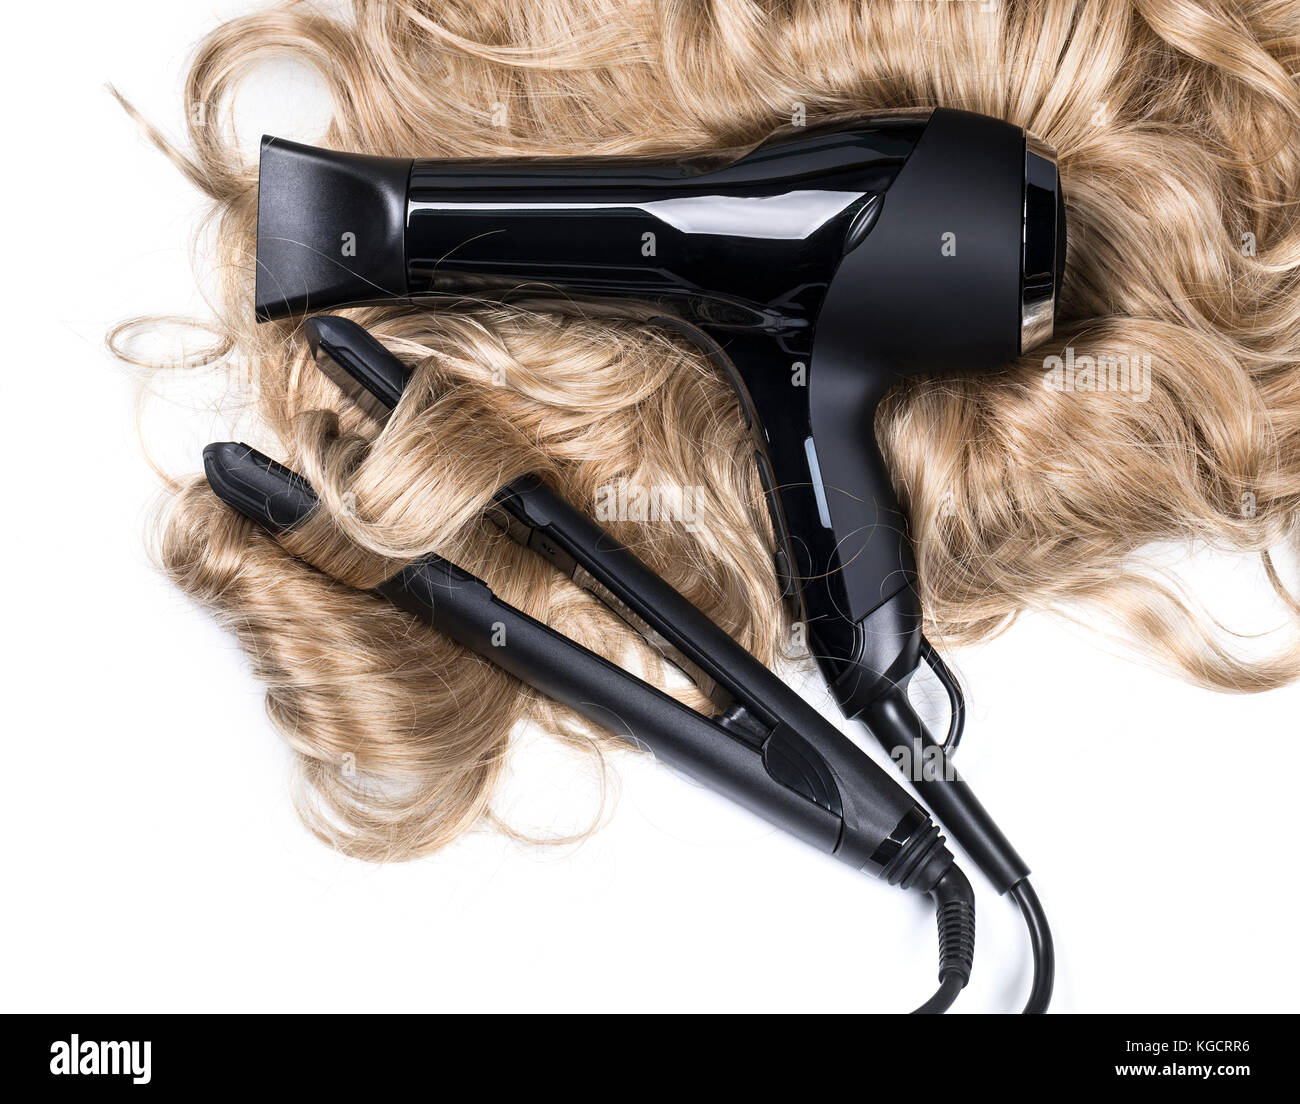 Herramientas de peluqueria fotografías e imágenes de alta resolución - Alamy